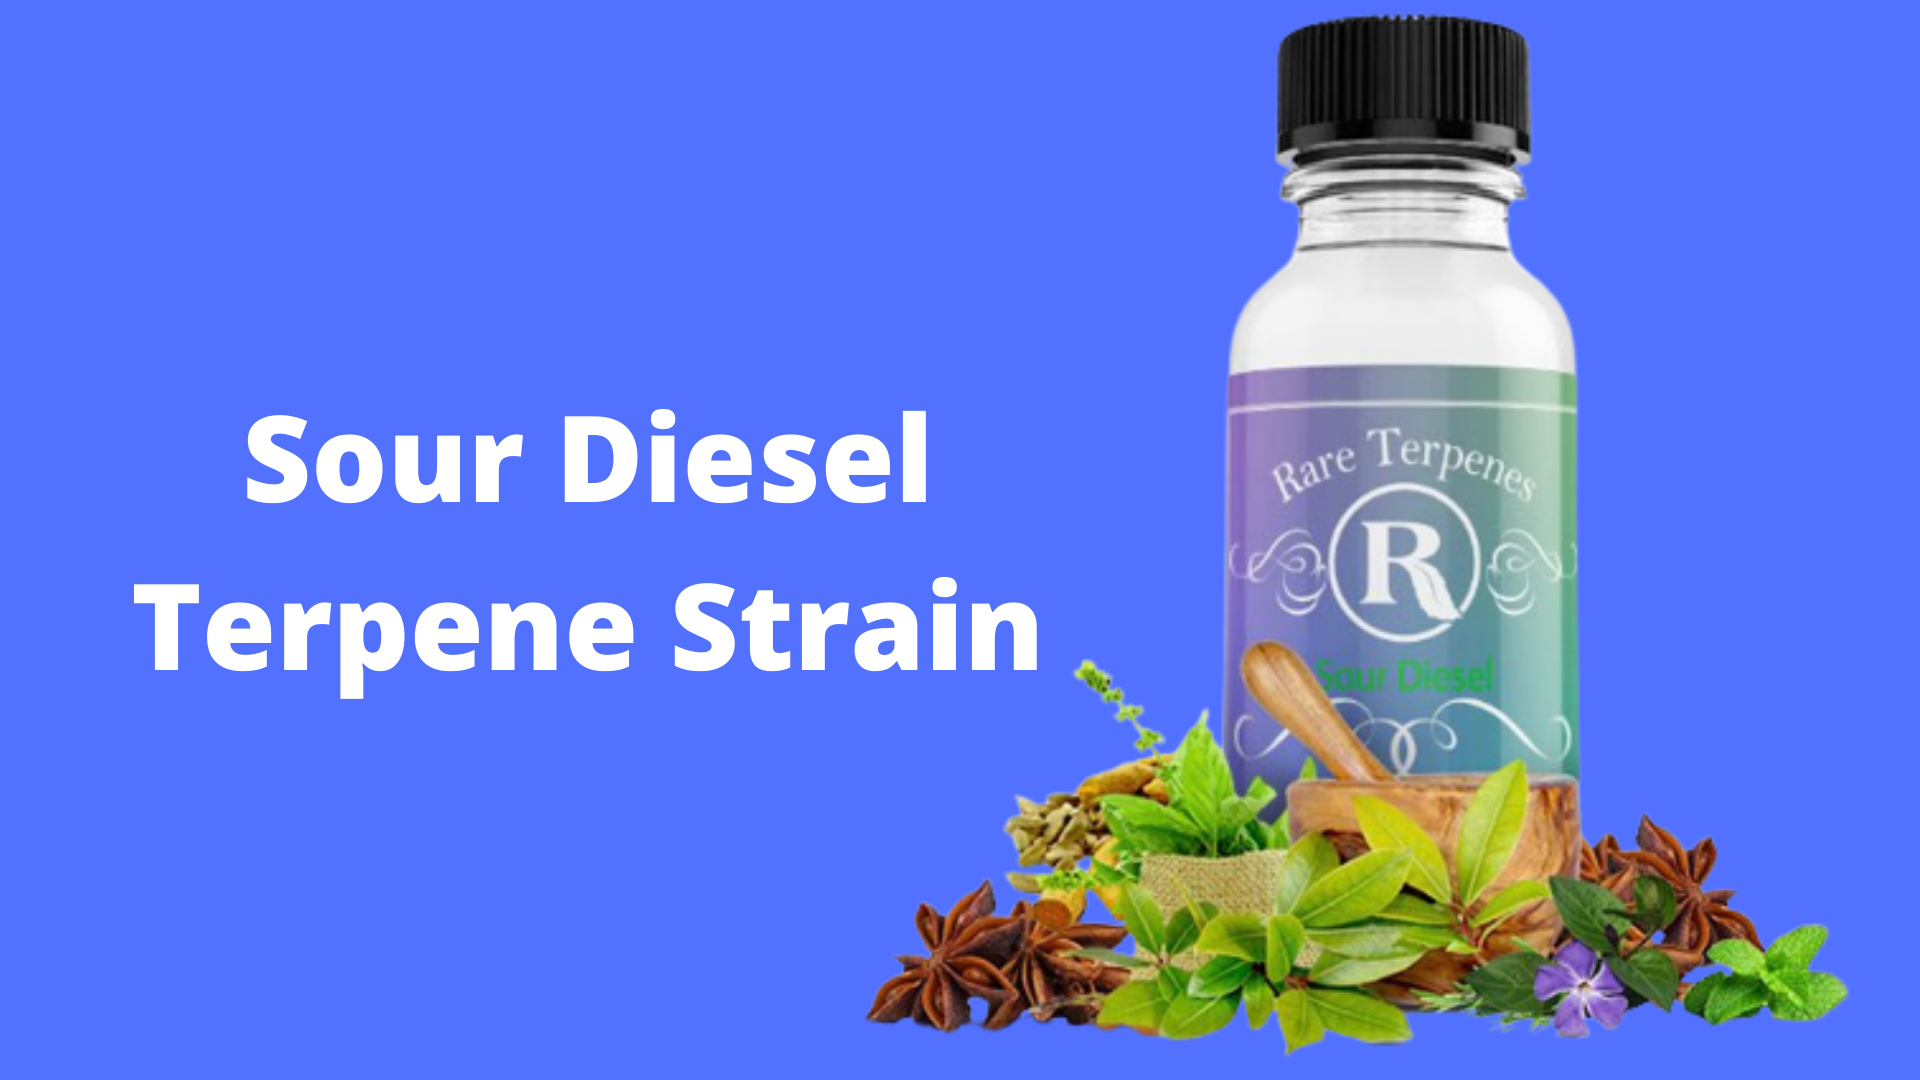 Sour Diesel Terpenes